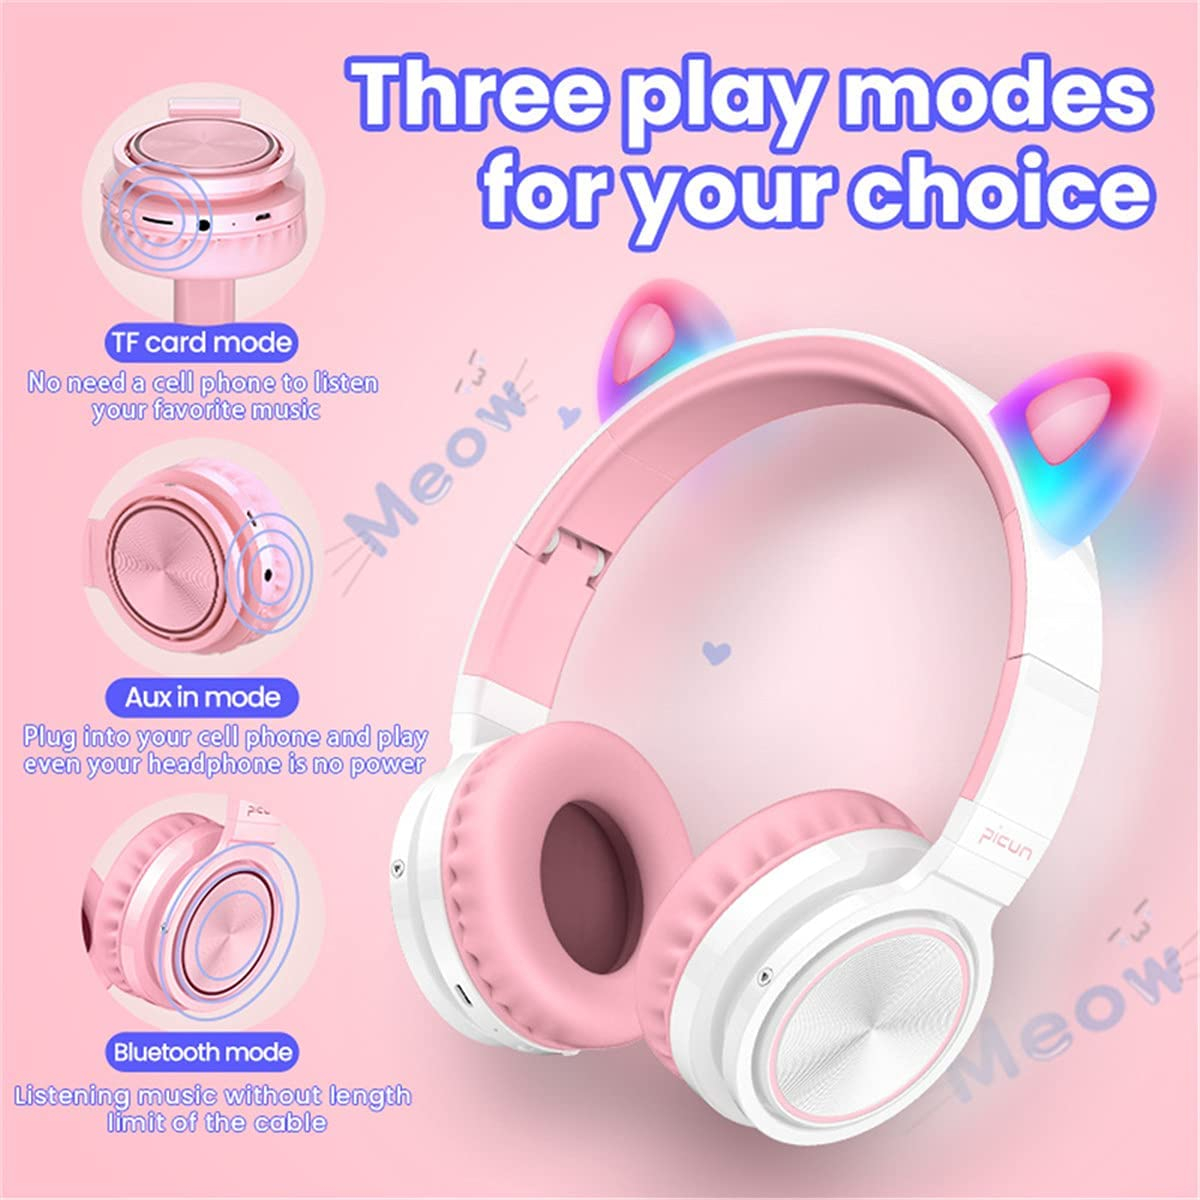 Picun Lucky Cat Trådlösa barnhörlurar med LED-öron, rosa